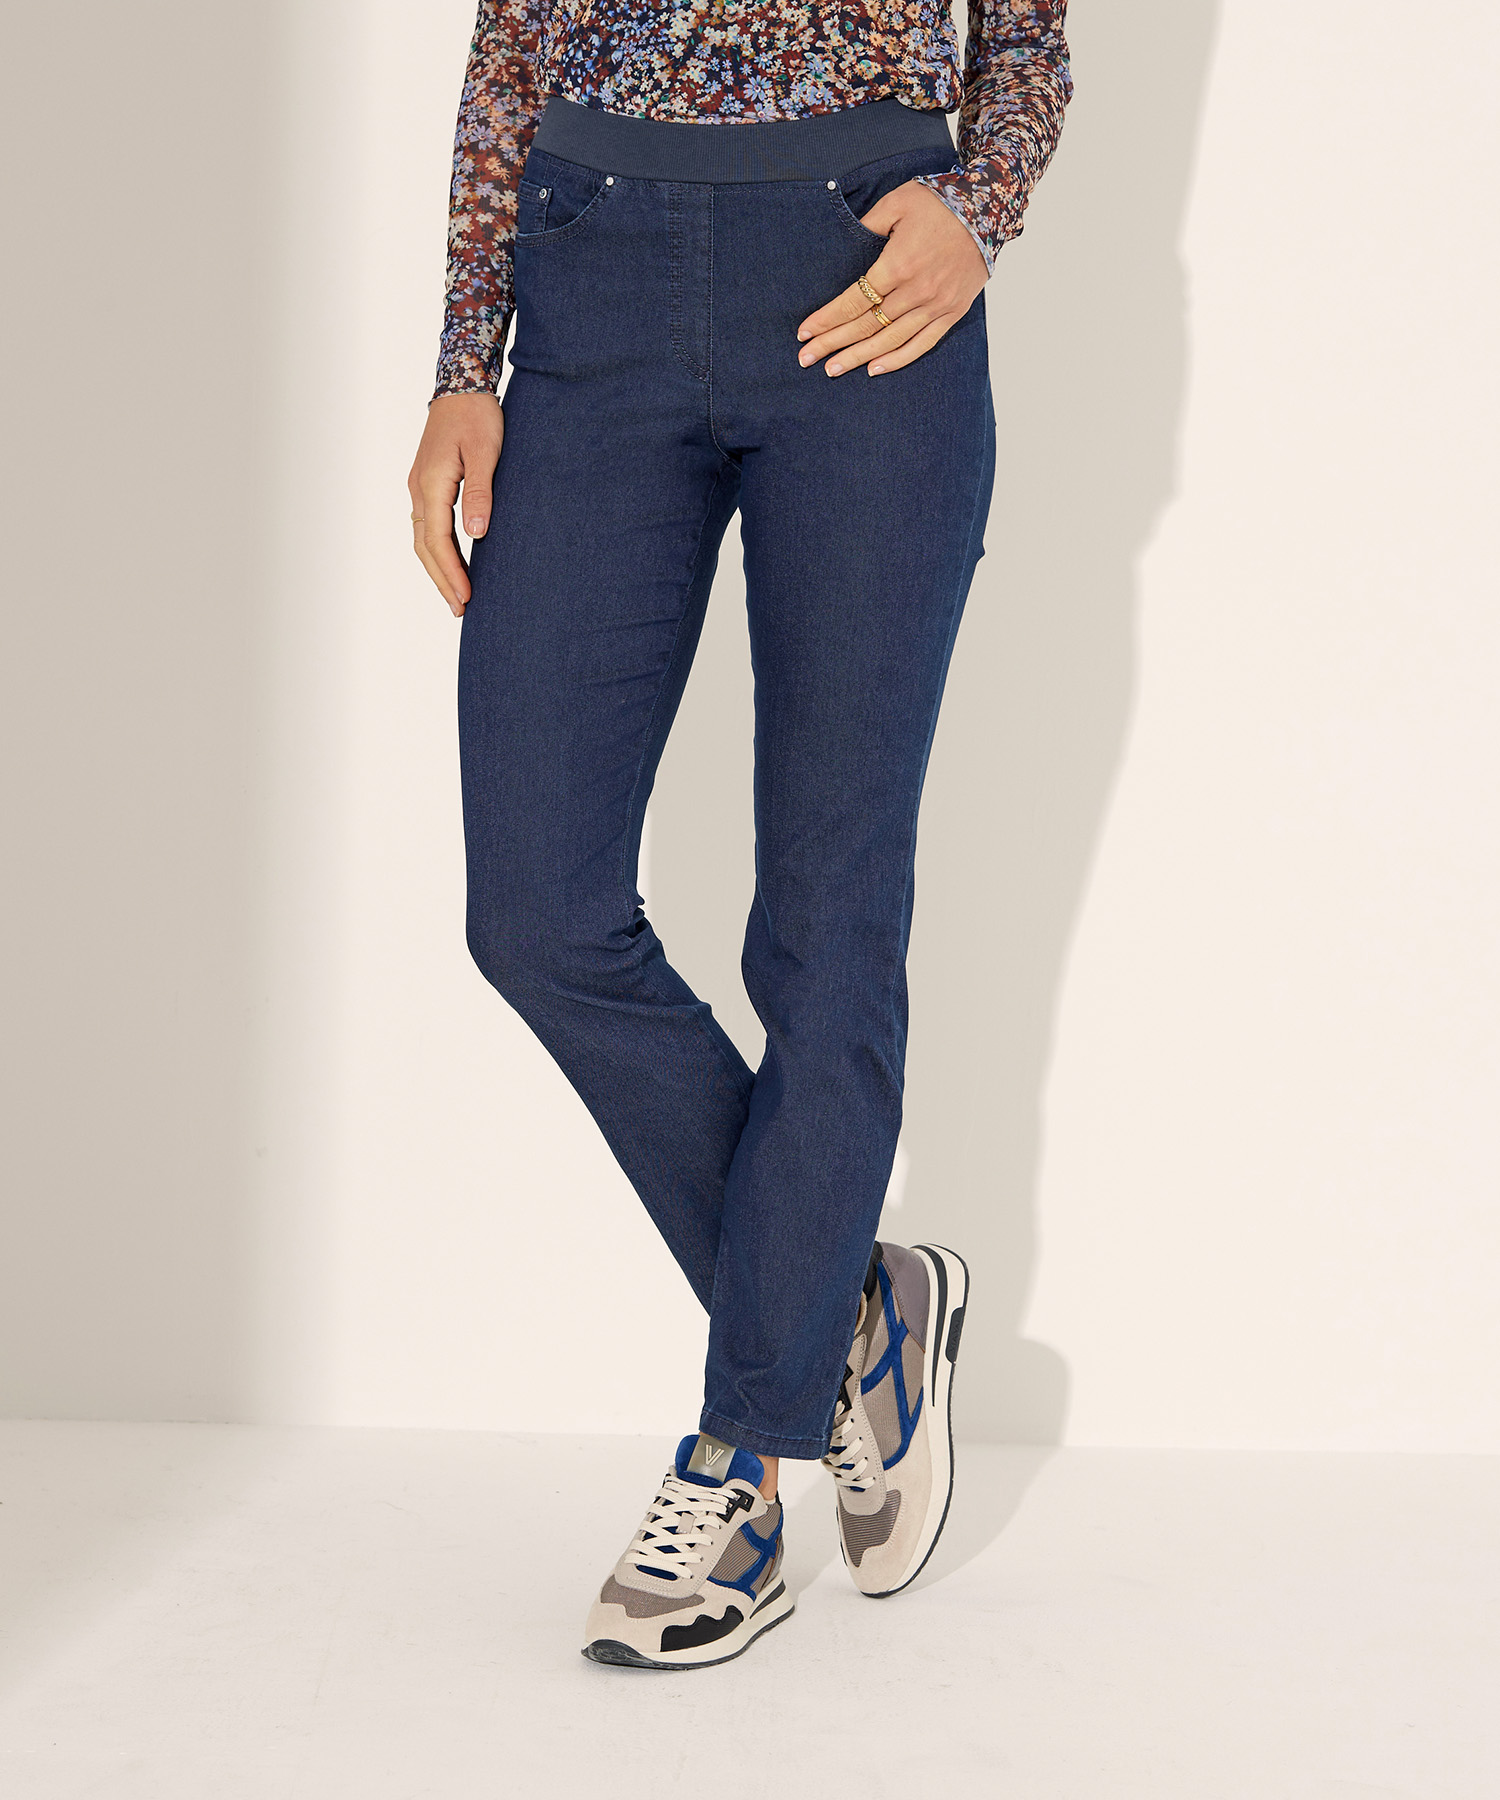 Raphaela By Brax schmal jeans Pamina Jeans geschnittene von